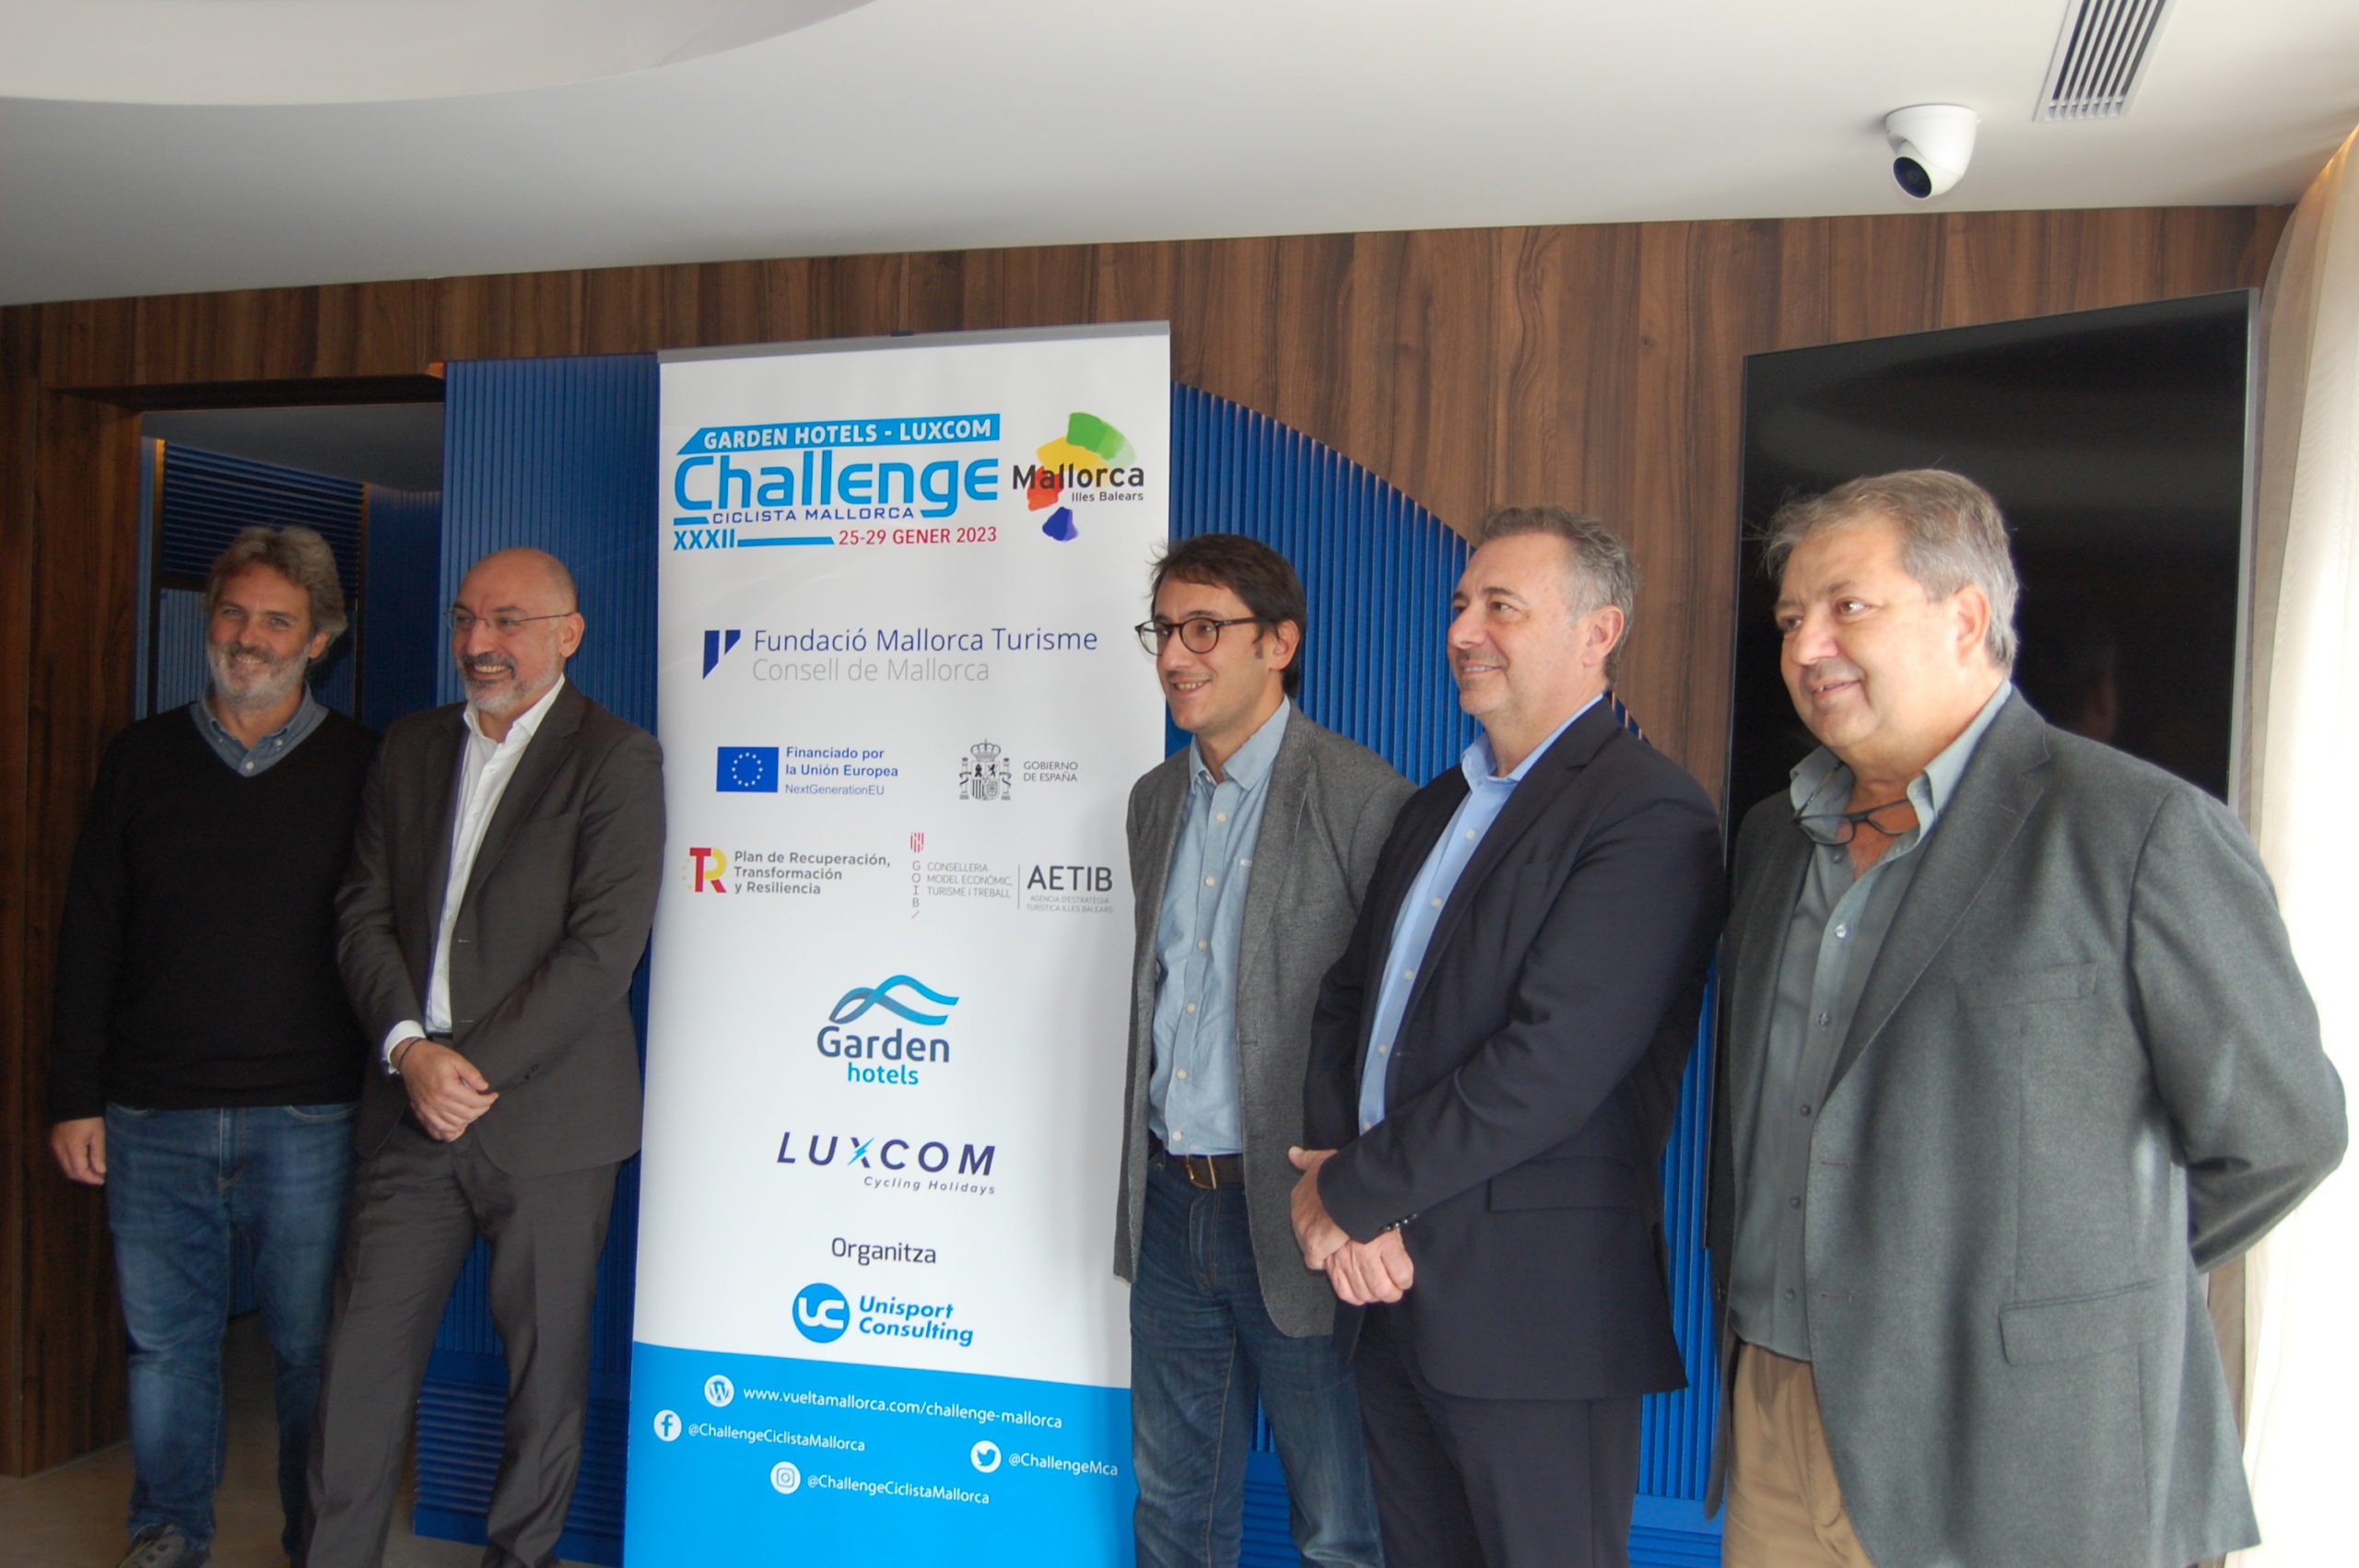 La televisión en directo vuelve a la Challenge Ciclista y Garden Hotels Luxcom seguirá como patrocinador principal